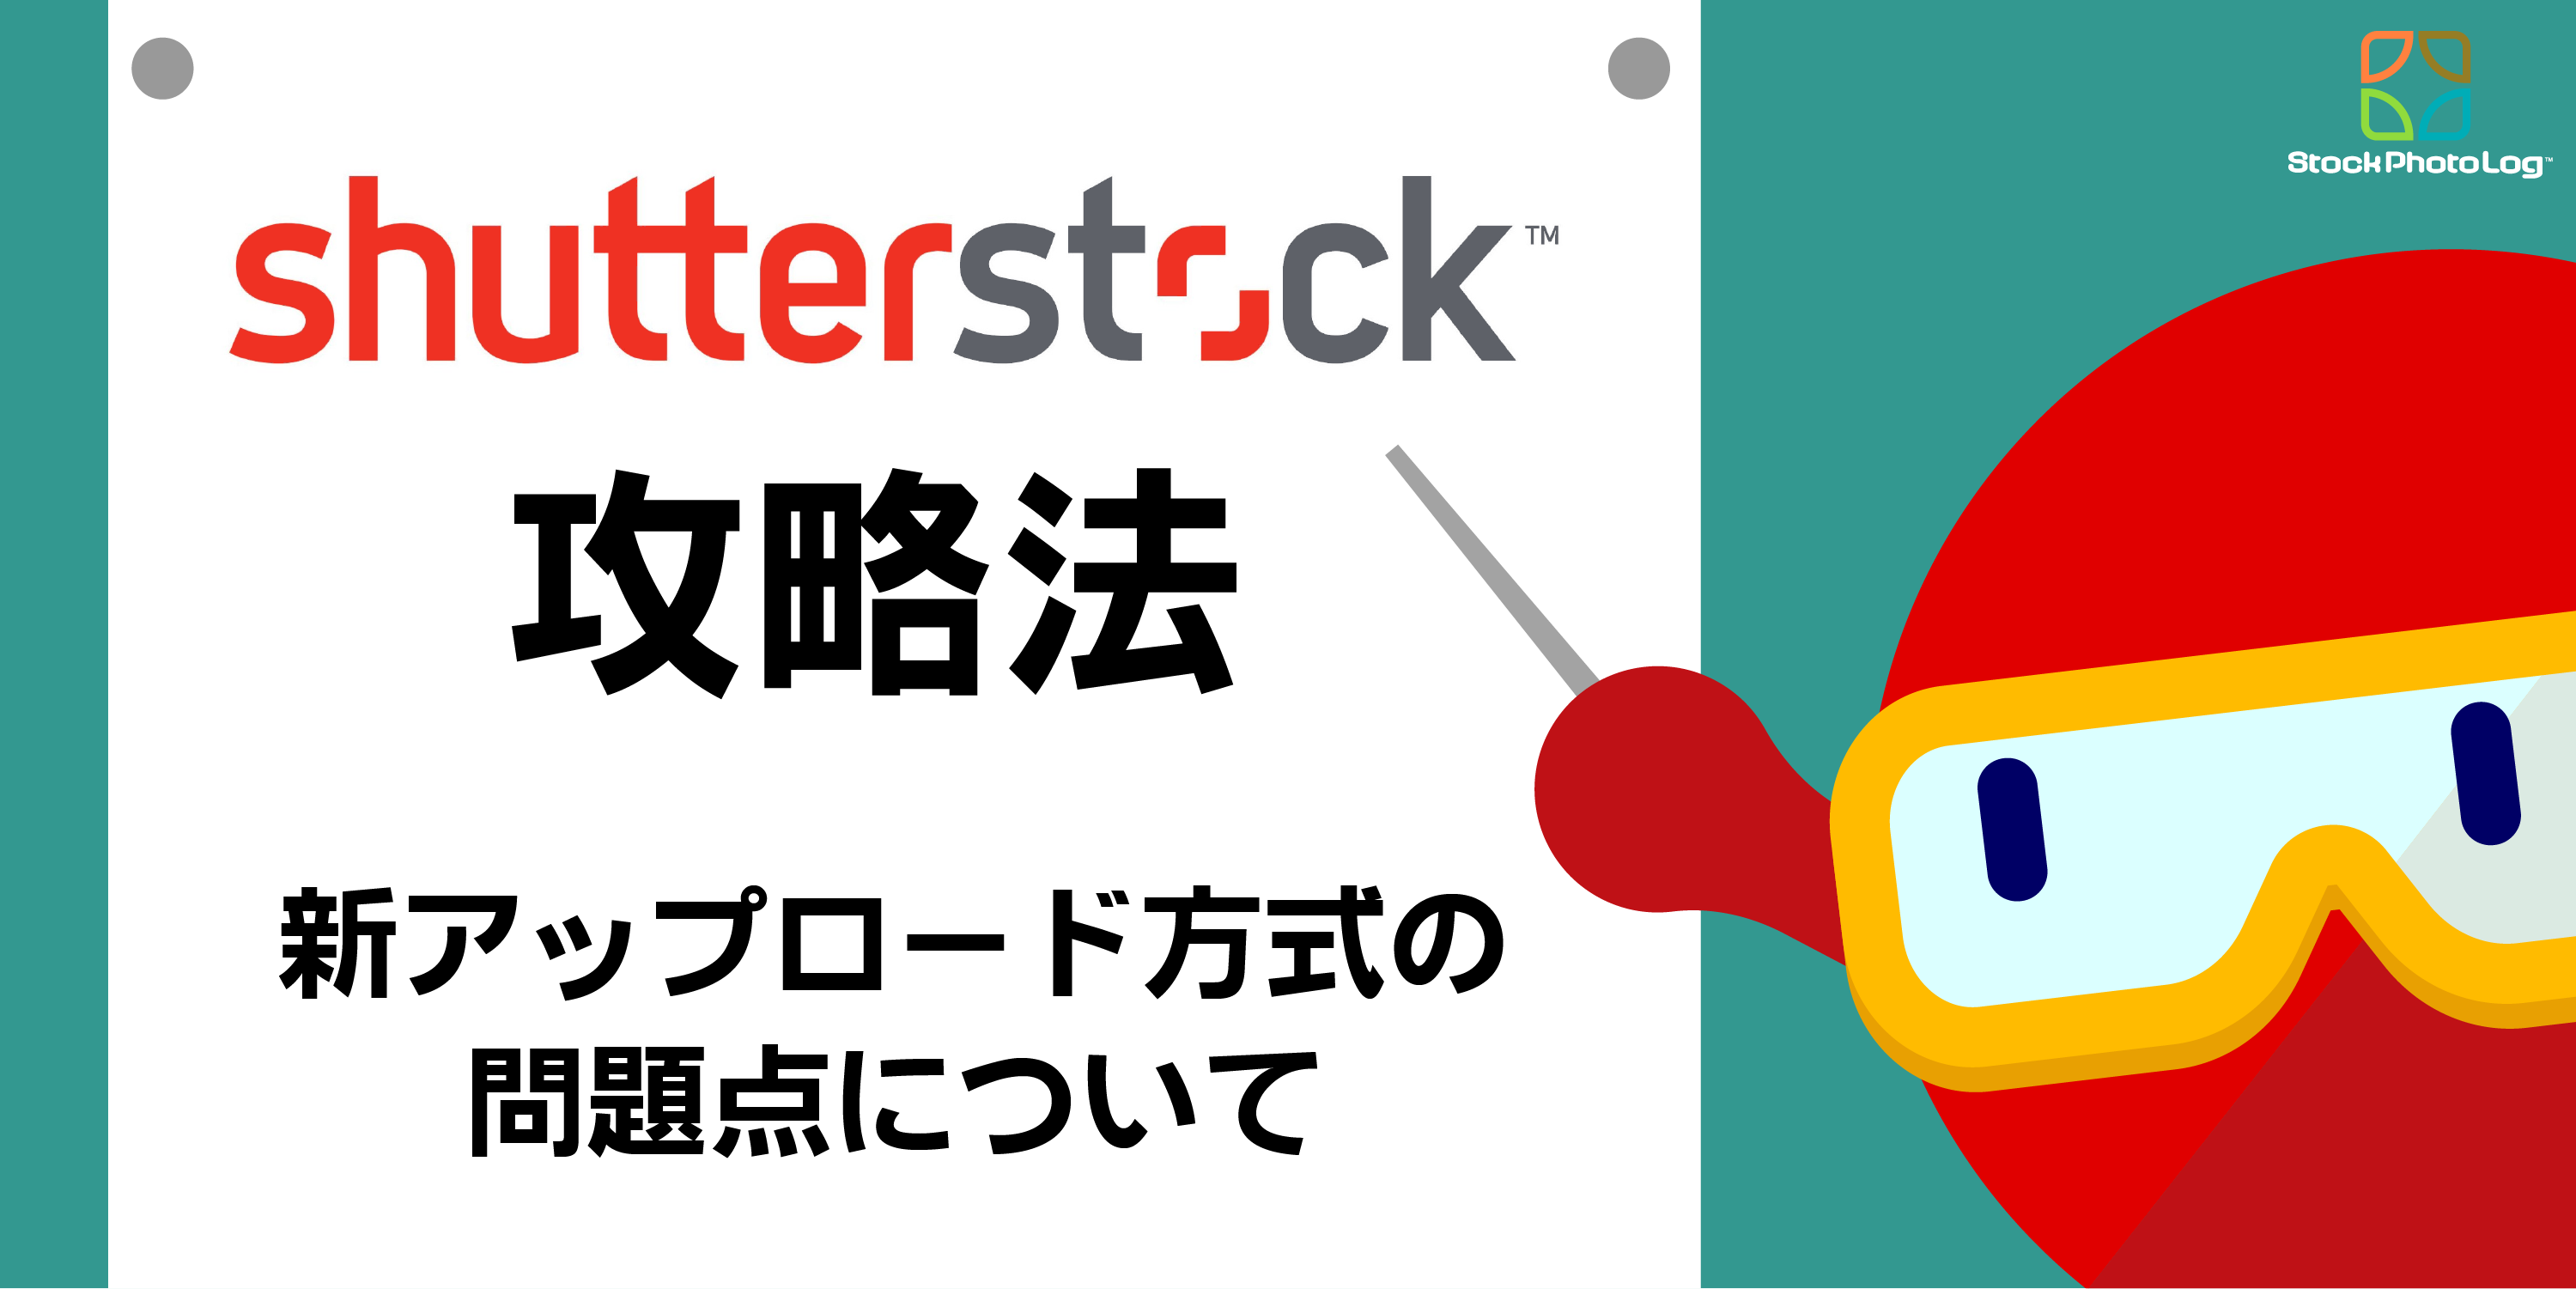 Shutterstock攻略法